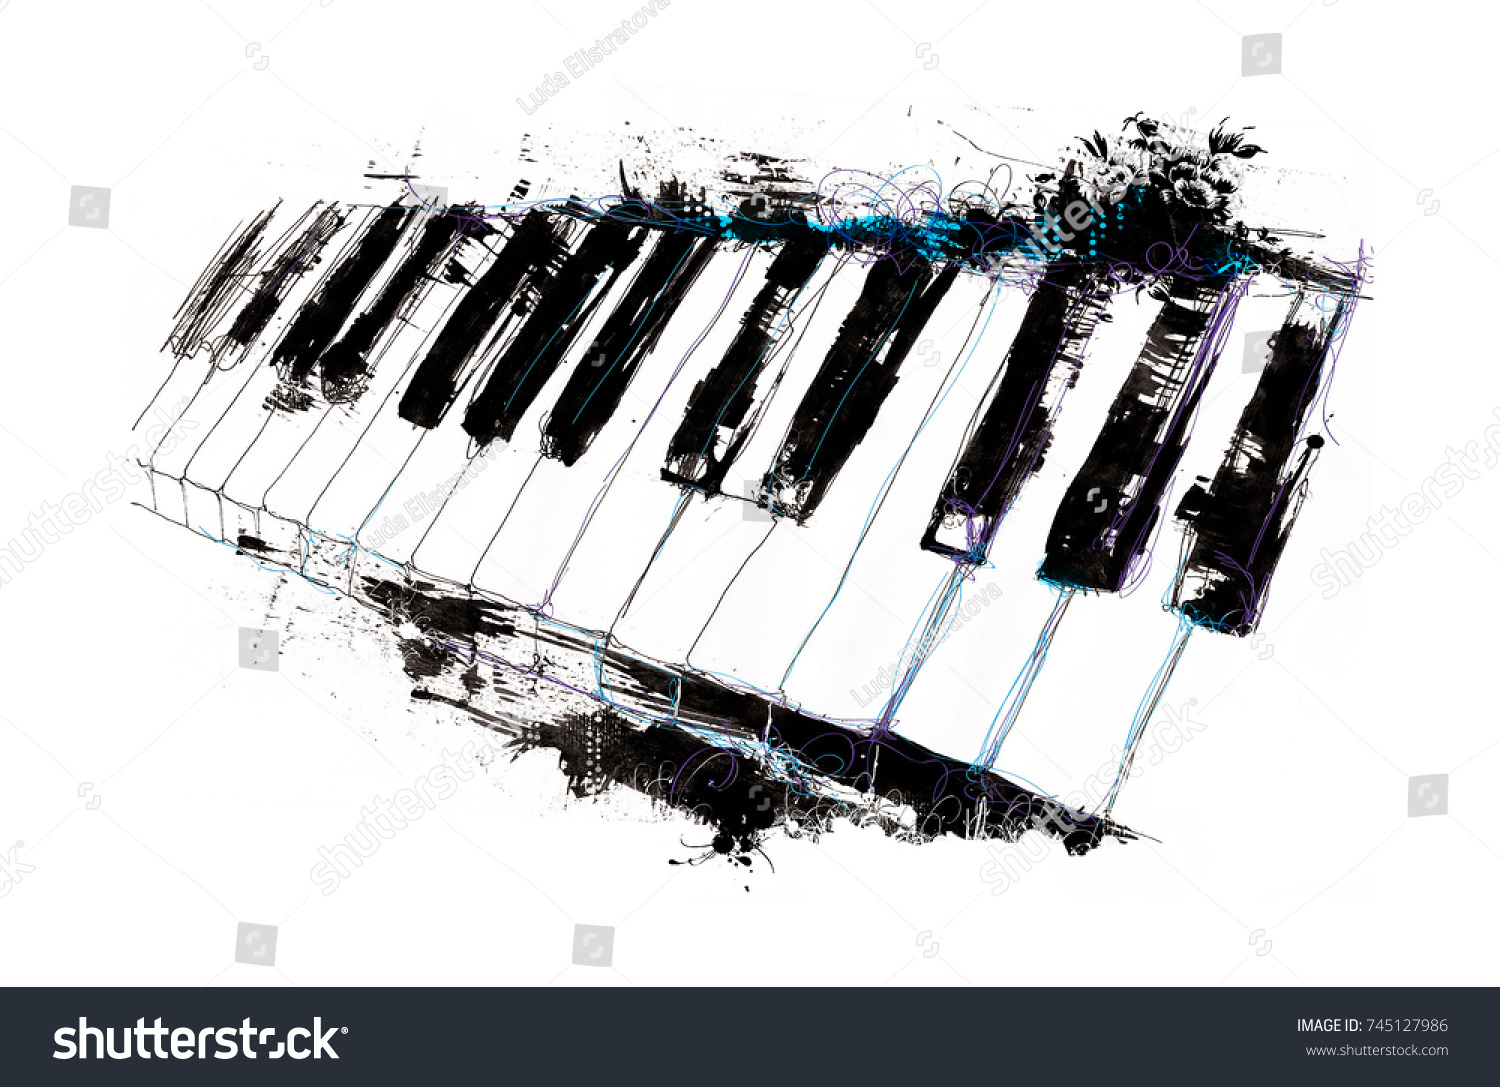 ピアノの鍵盤の水彩イラスト のイラスト素材